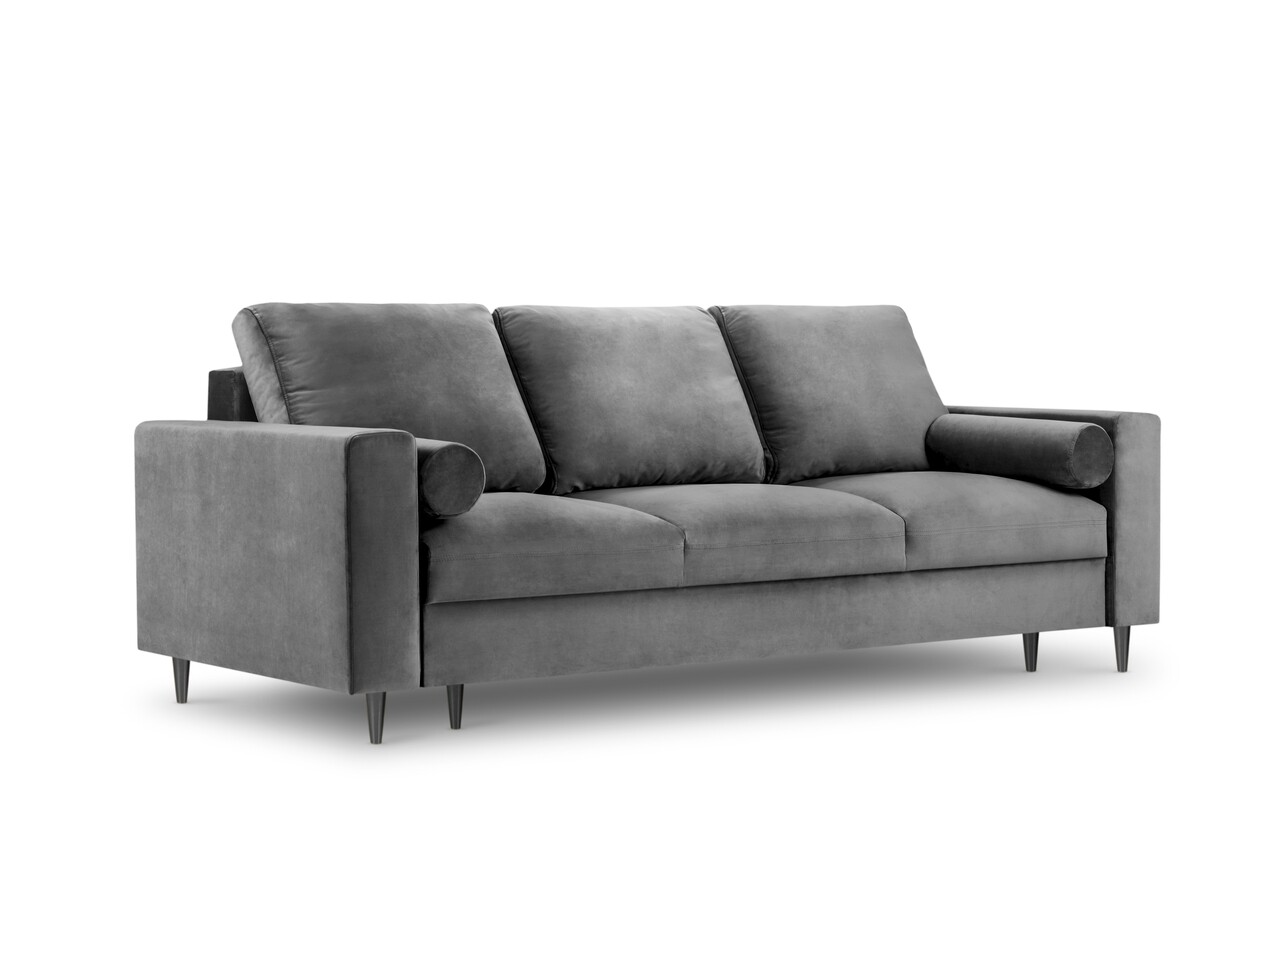 Mazzini sofas kihúzható kanapé, camellia, mazzini kanapék, 3 ülőhely, tárolódobozzal, 220x100x92 cm, bársony, világosszürke